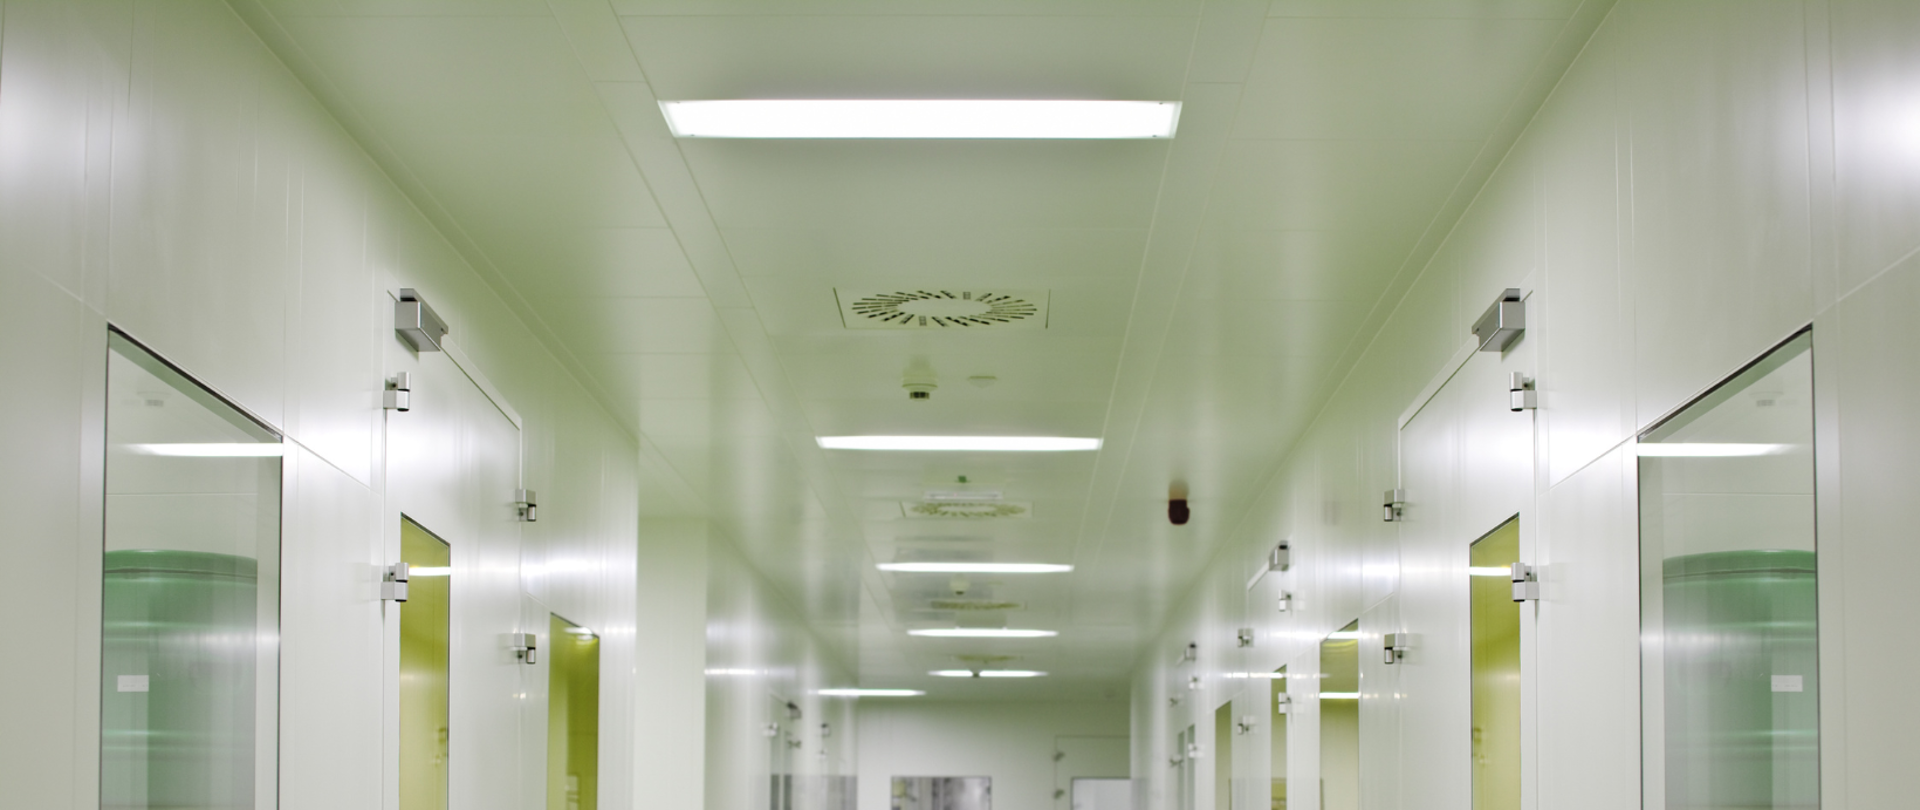 korytarz podmiotu leczniczego z białymi ścianami o drzwiami oraz widocznymi elementami wentylacji mechanicznej w suficie